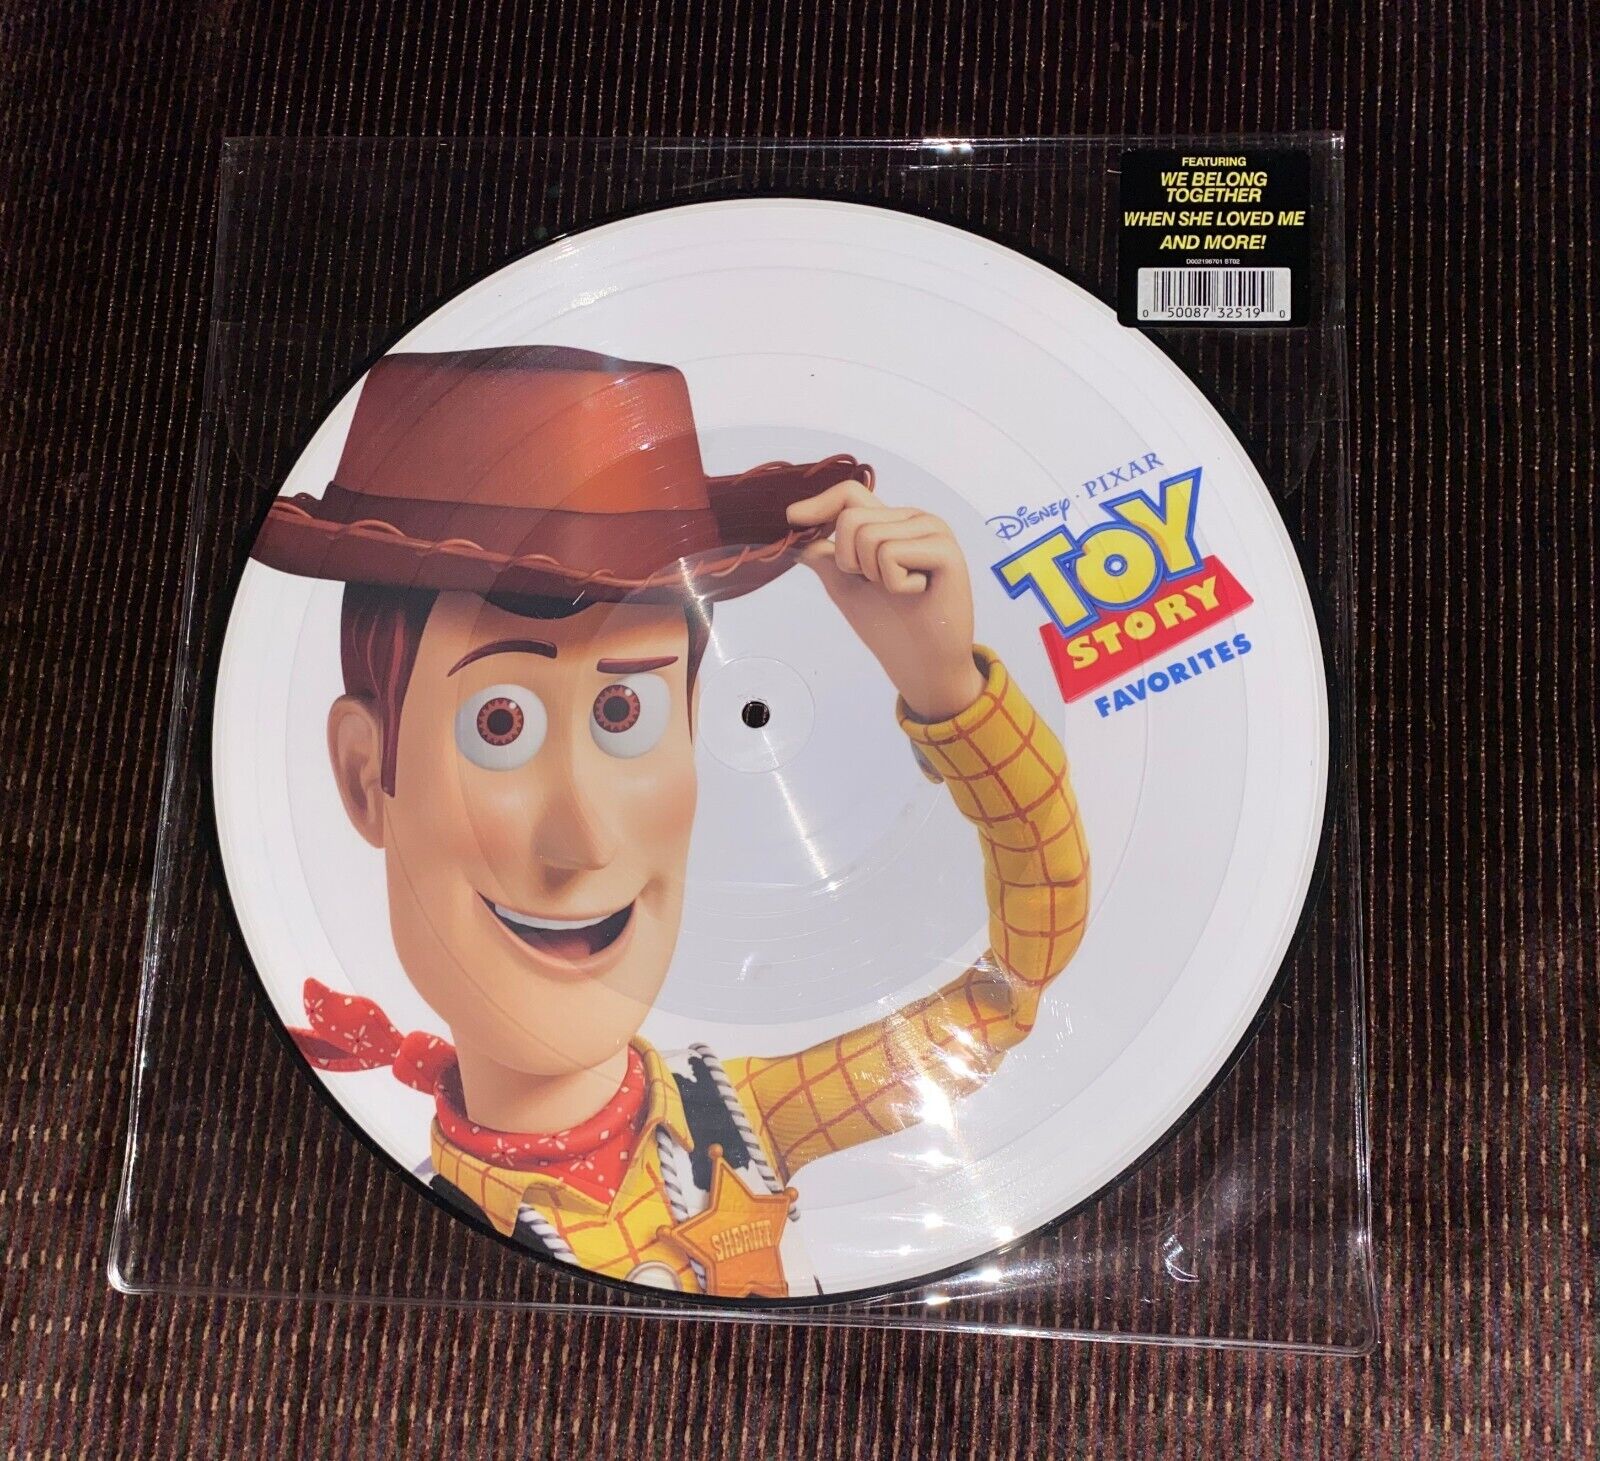 DISNEY PIXAR Toy Story Picture Vinyl RECORD  NEW